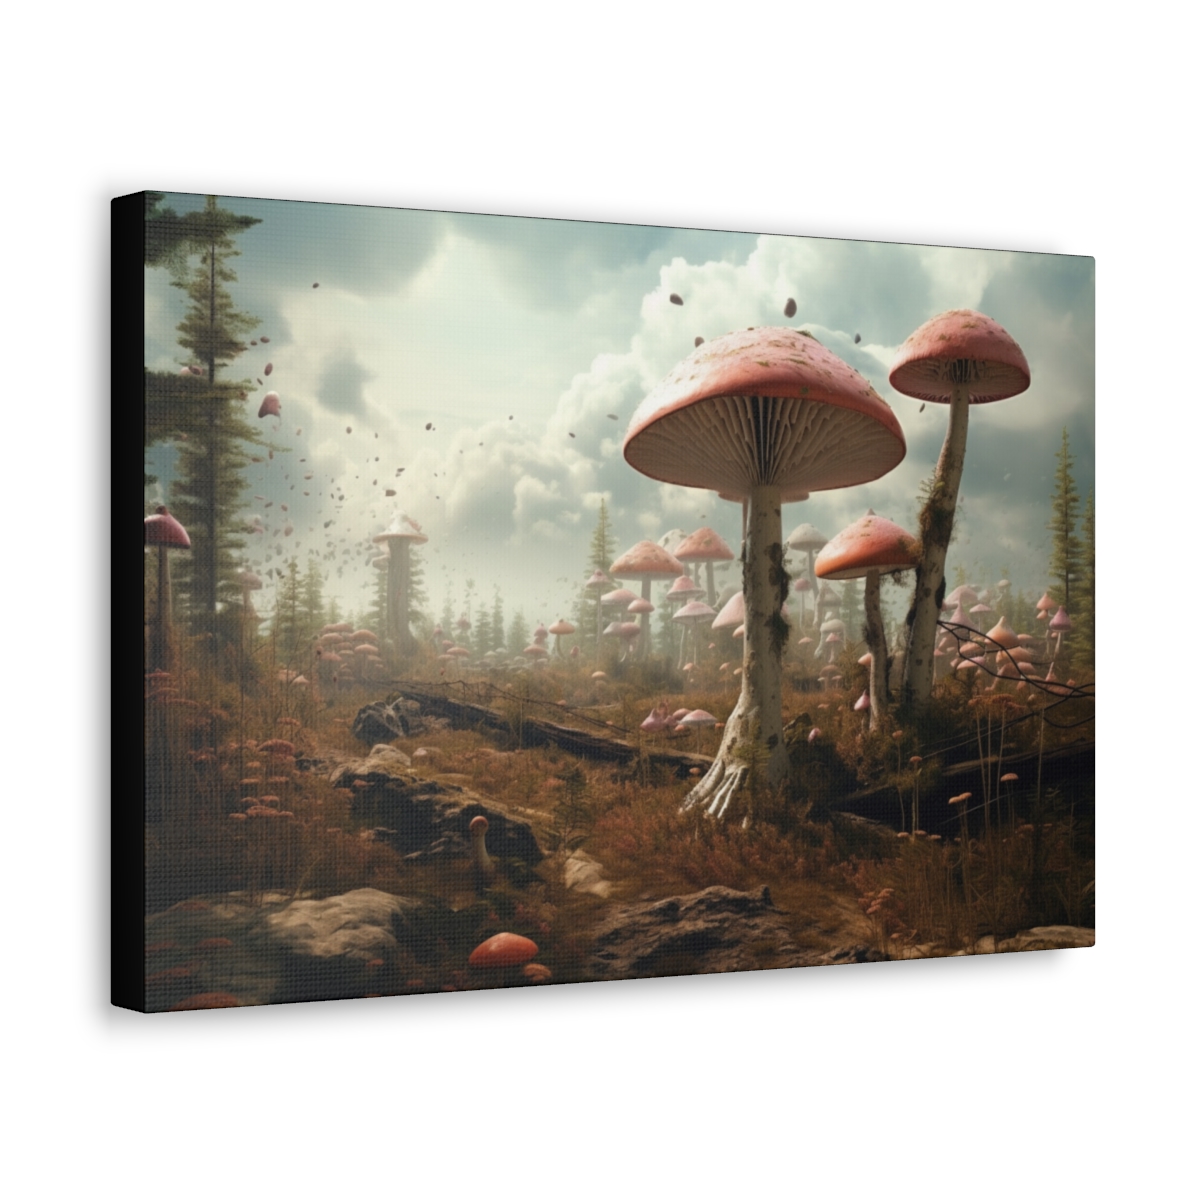 Mushroom Art Canvas Print: Salem's Shroom